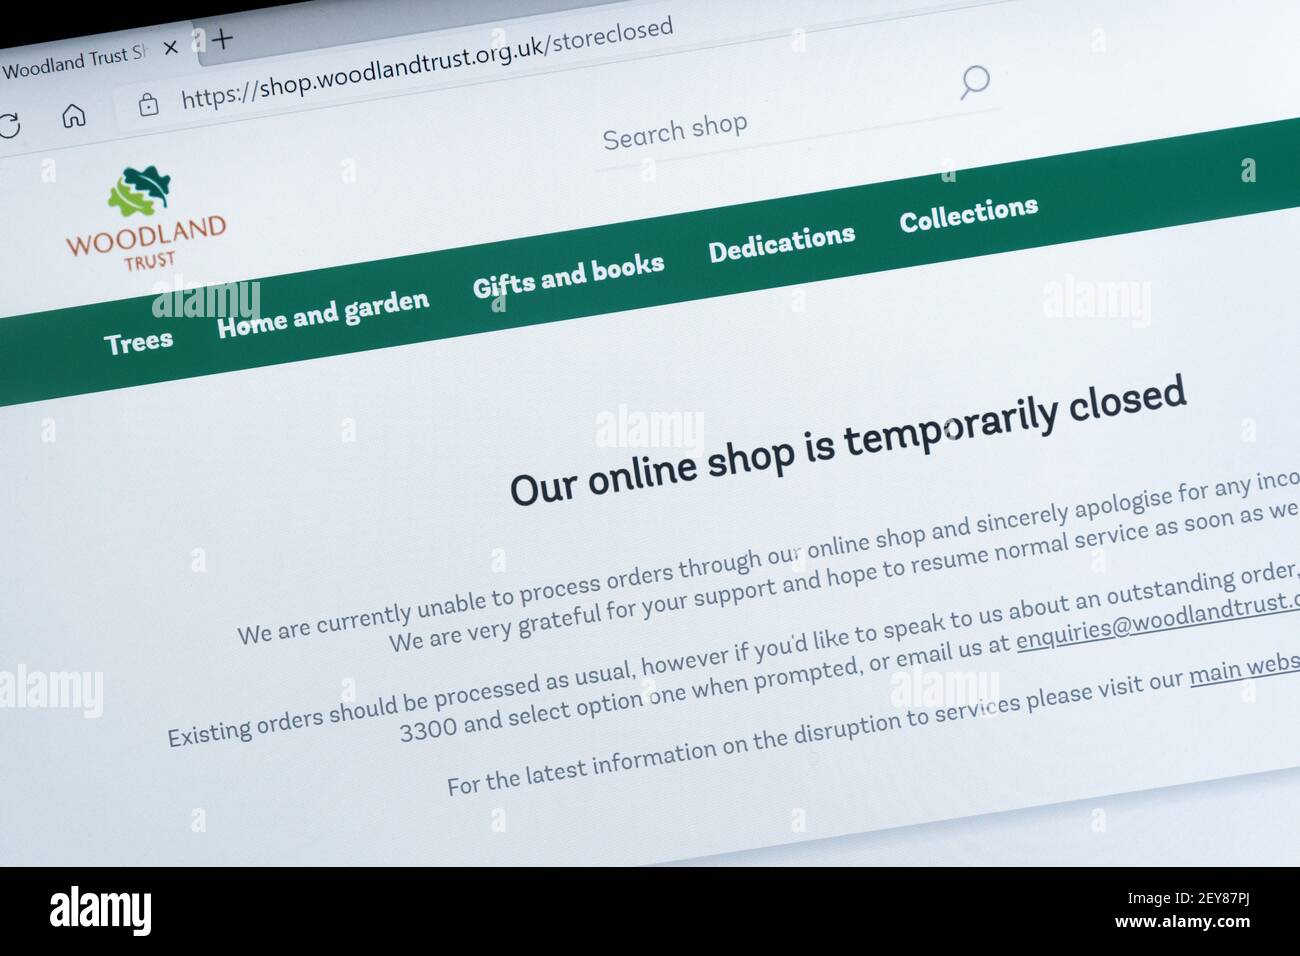 Woodland Trust Website nach einem großen Cyber-Angriff mit der Nachricht, dass ihr Online-Shop vorübergehend geschlossen ist, 2021, Großbritannien Stockfoto